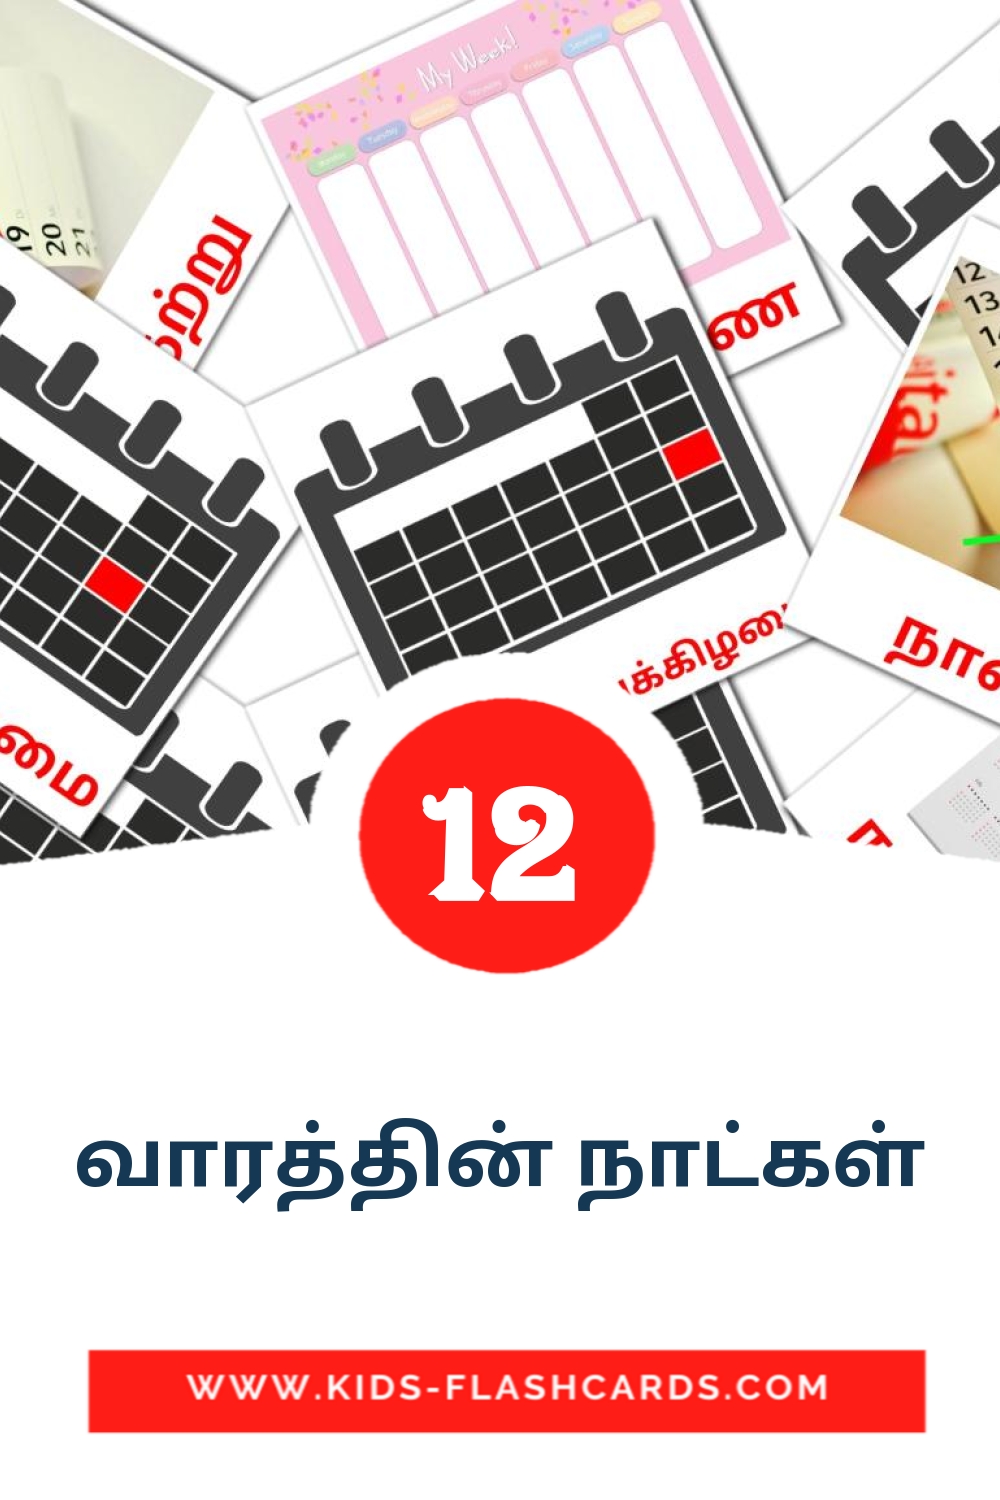 12 tarjetas didacticas de வாரத்தின் நாட்கள் para el jardín de infancia en tamil